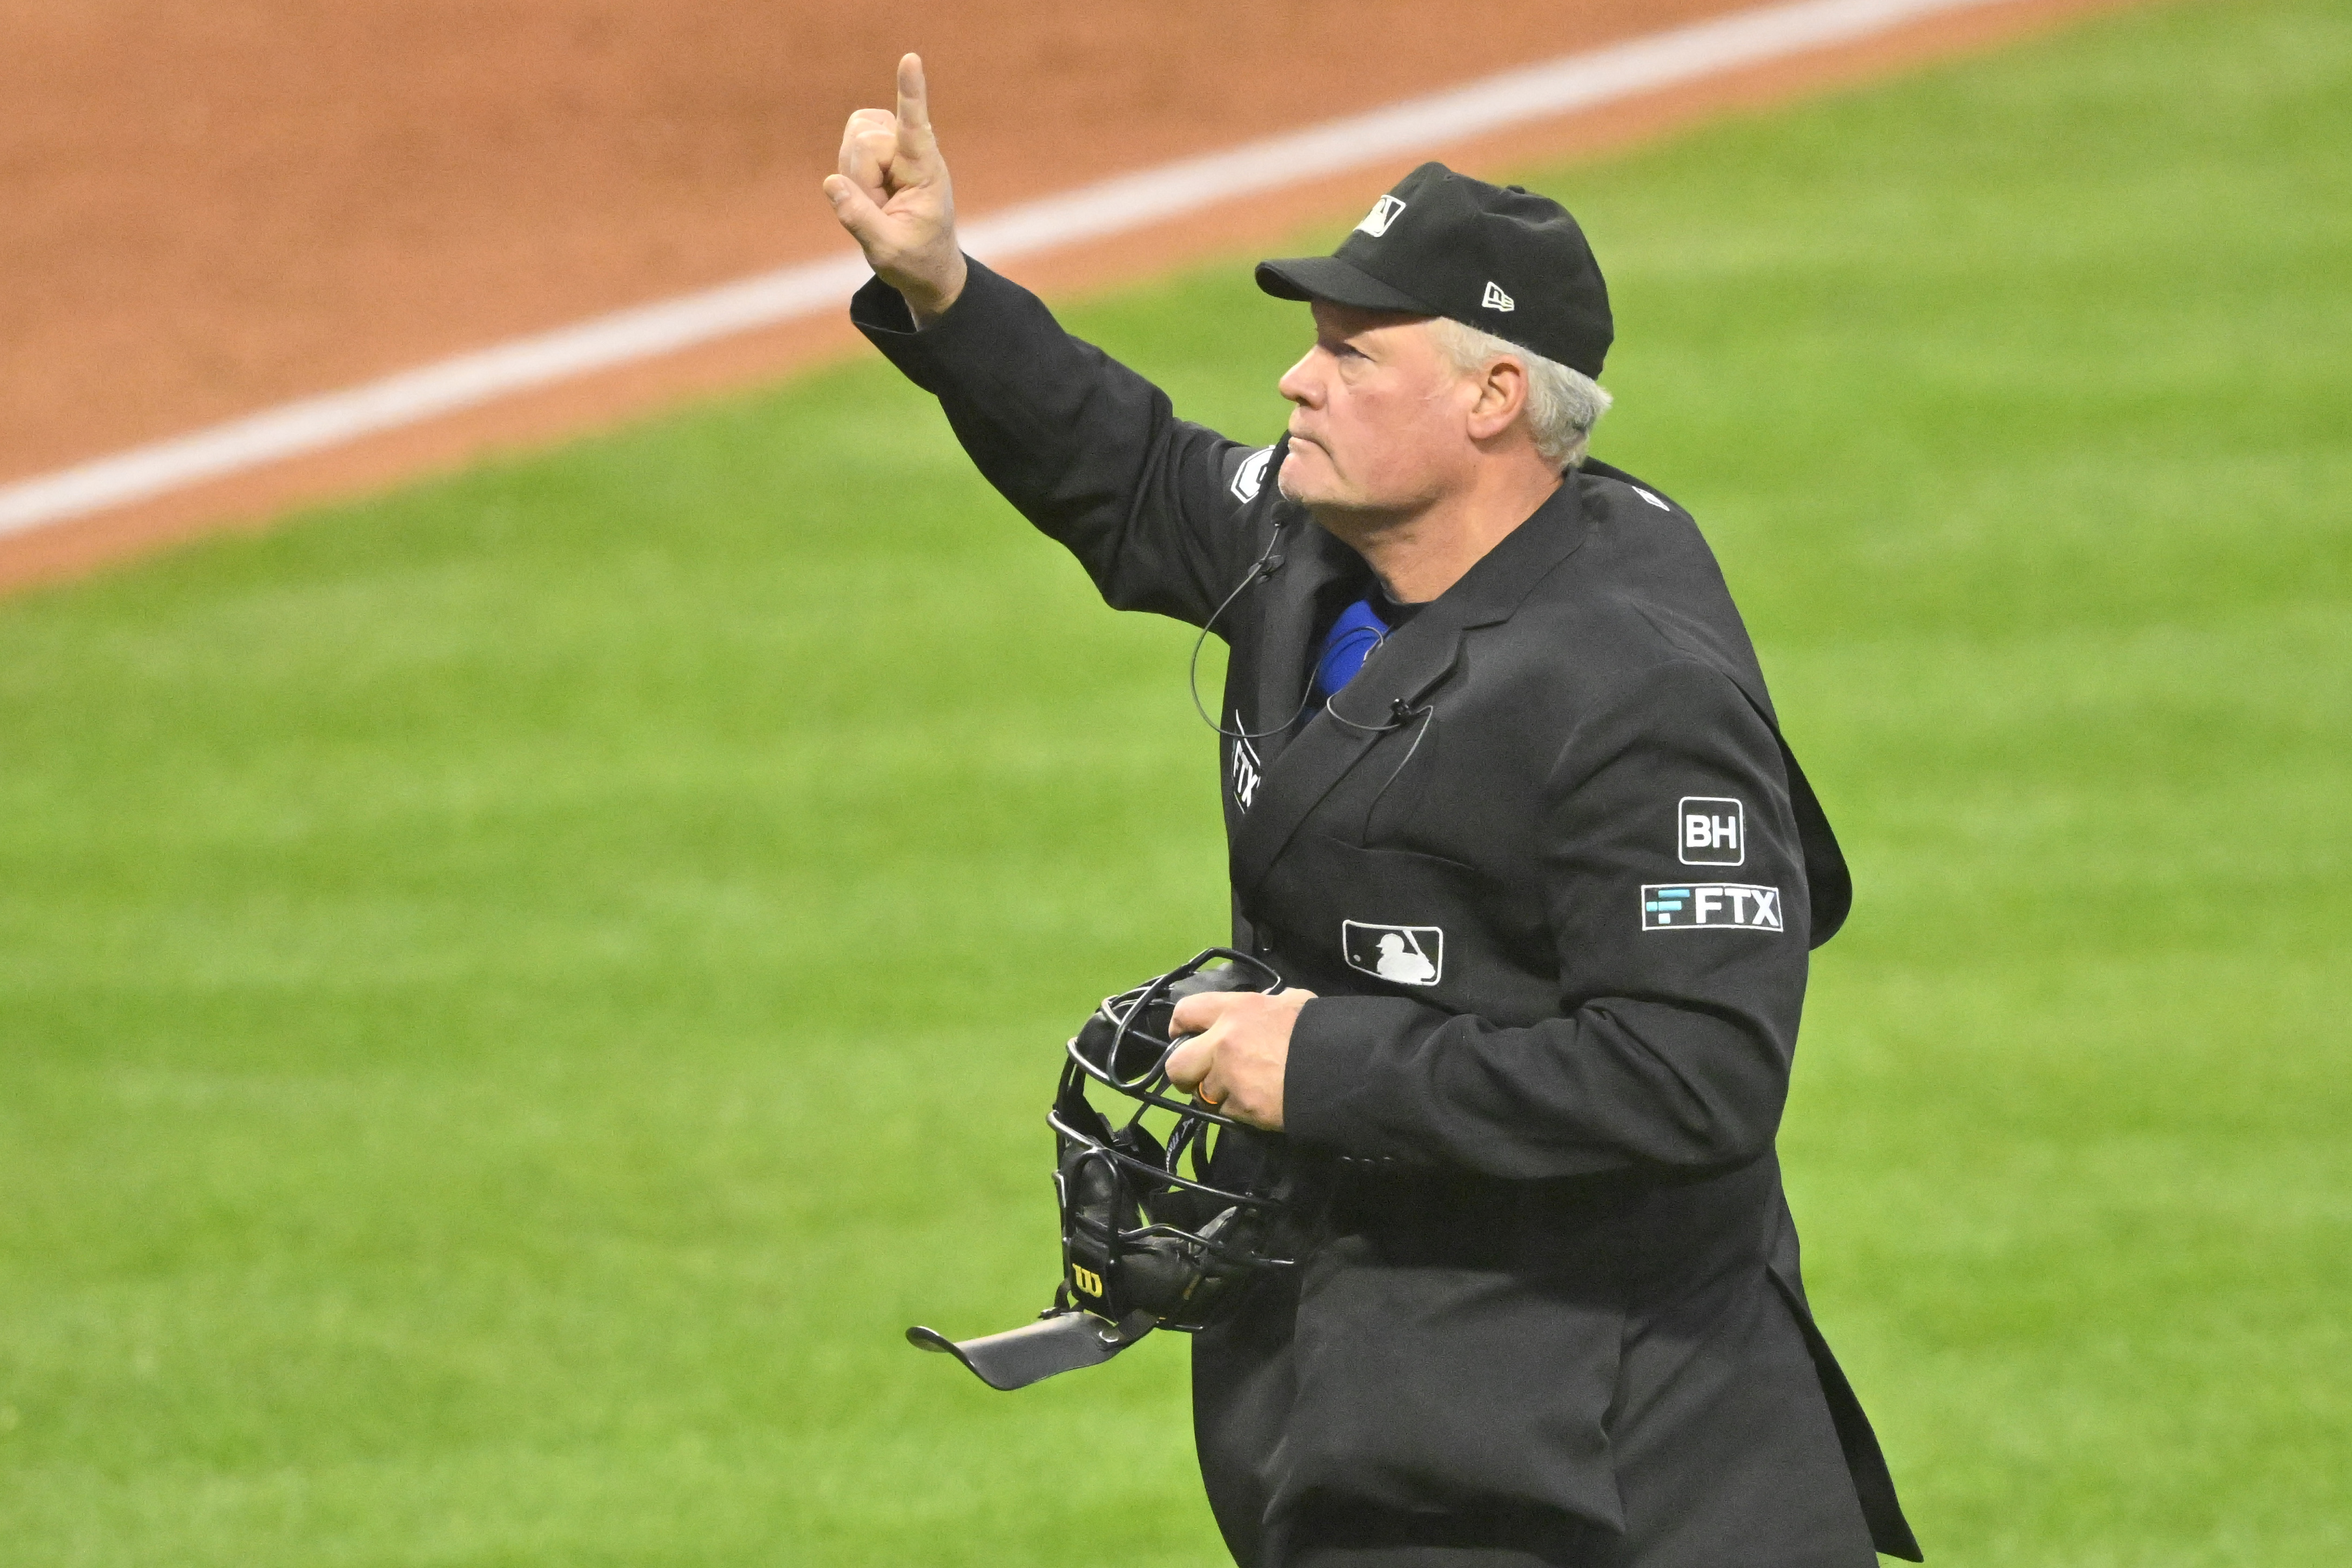 MLB umpire let go after drug violation  Monterey Herald